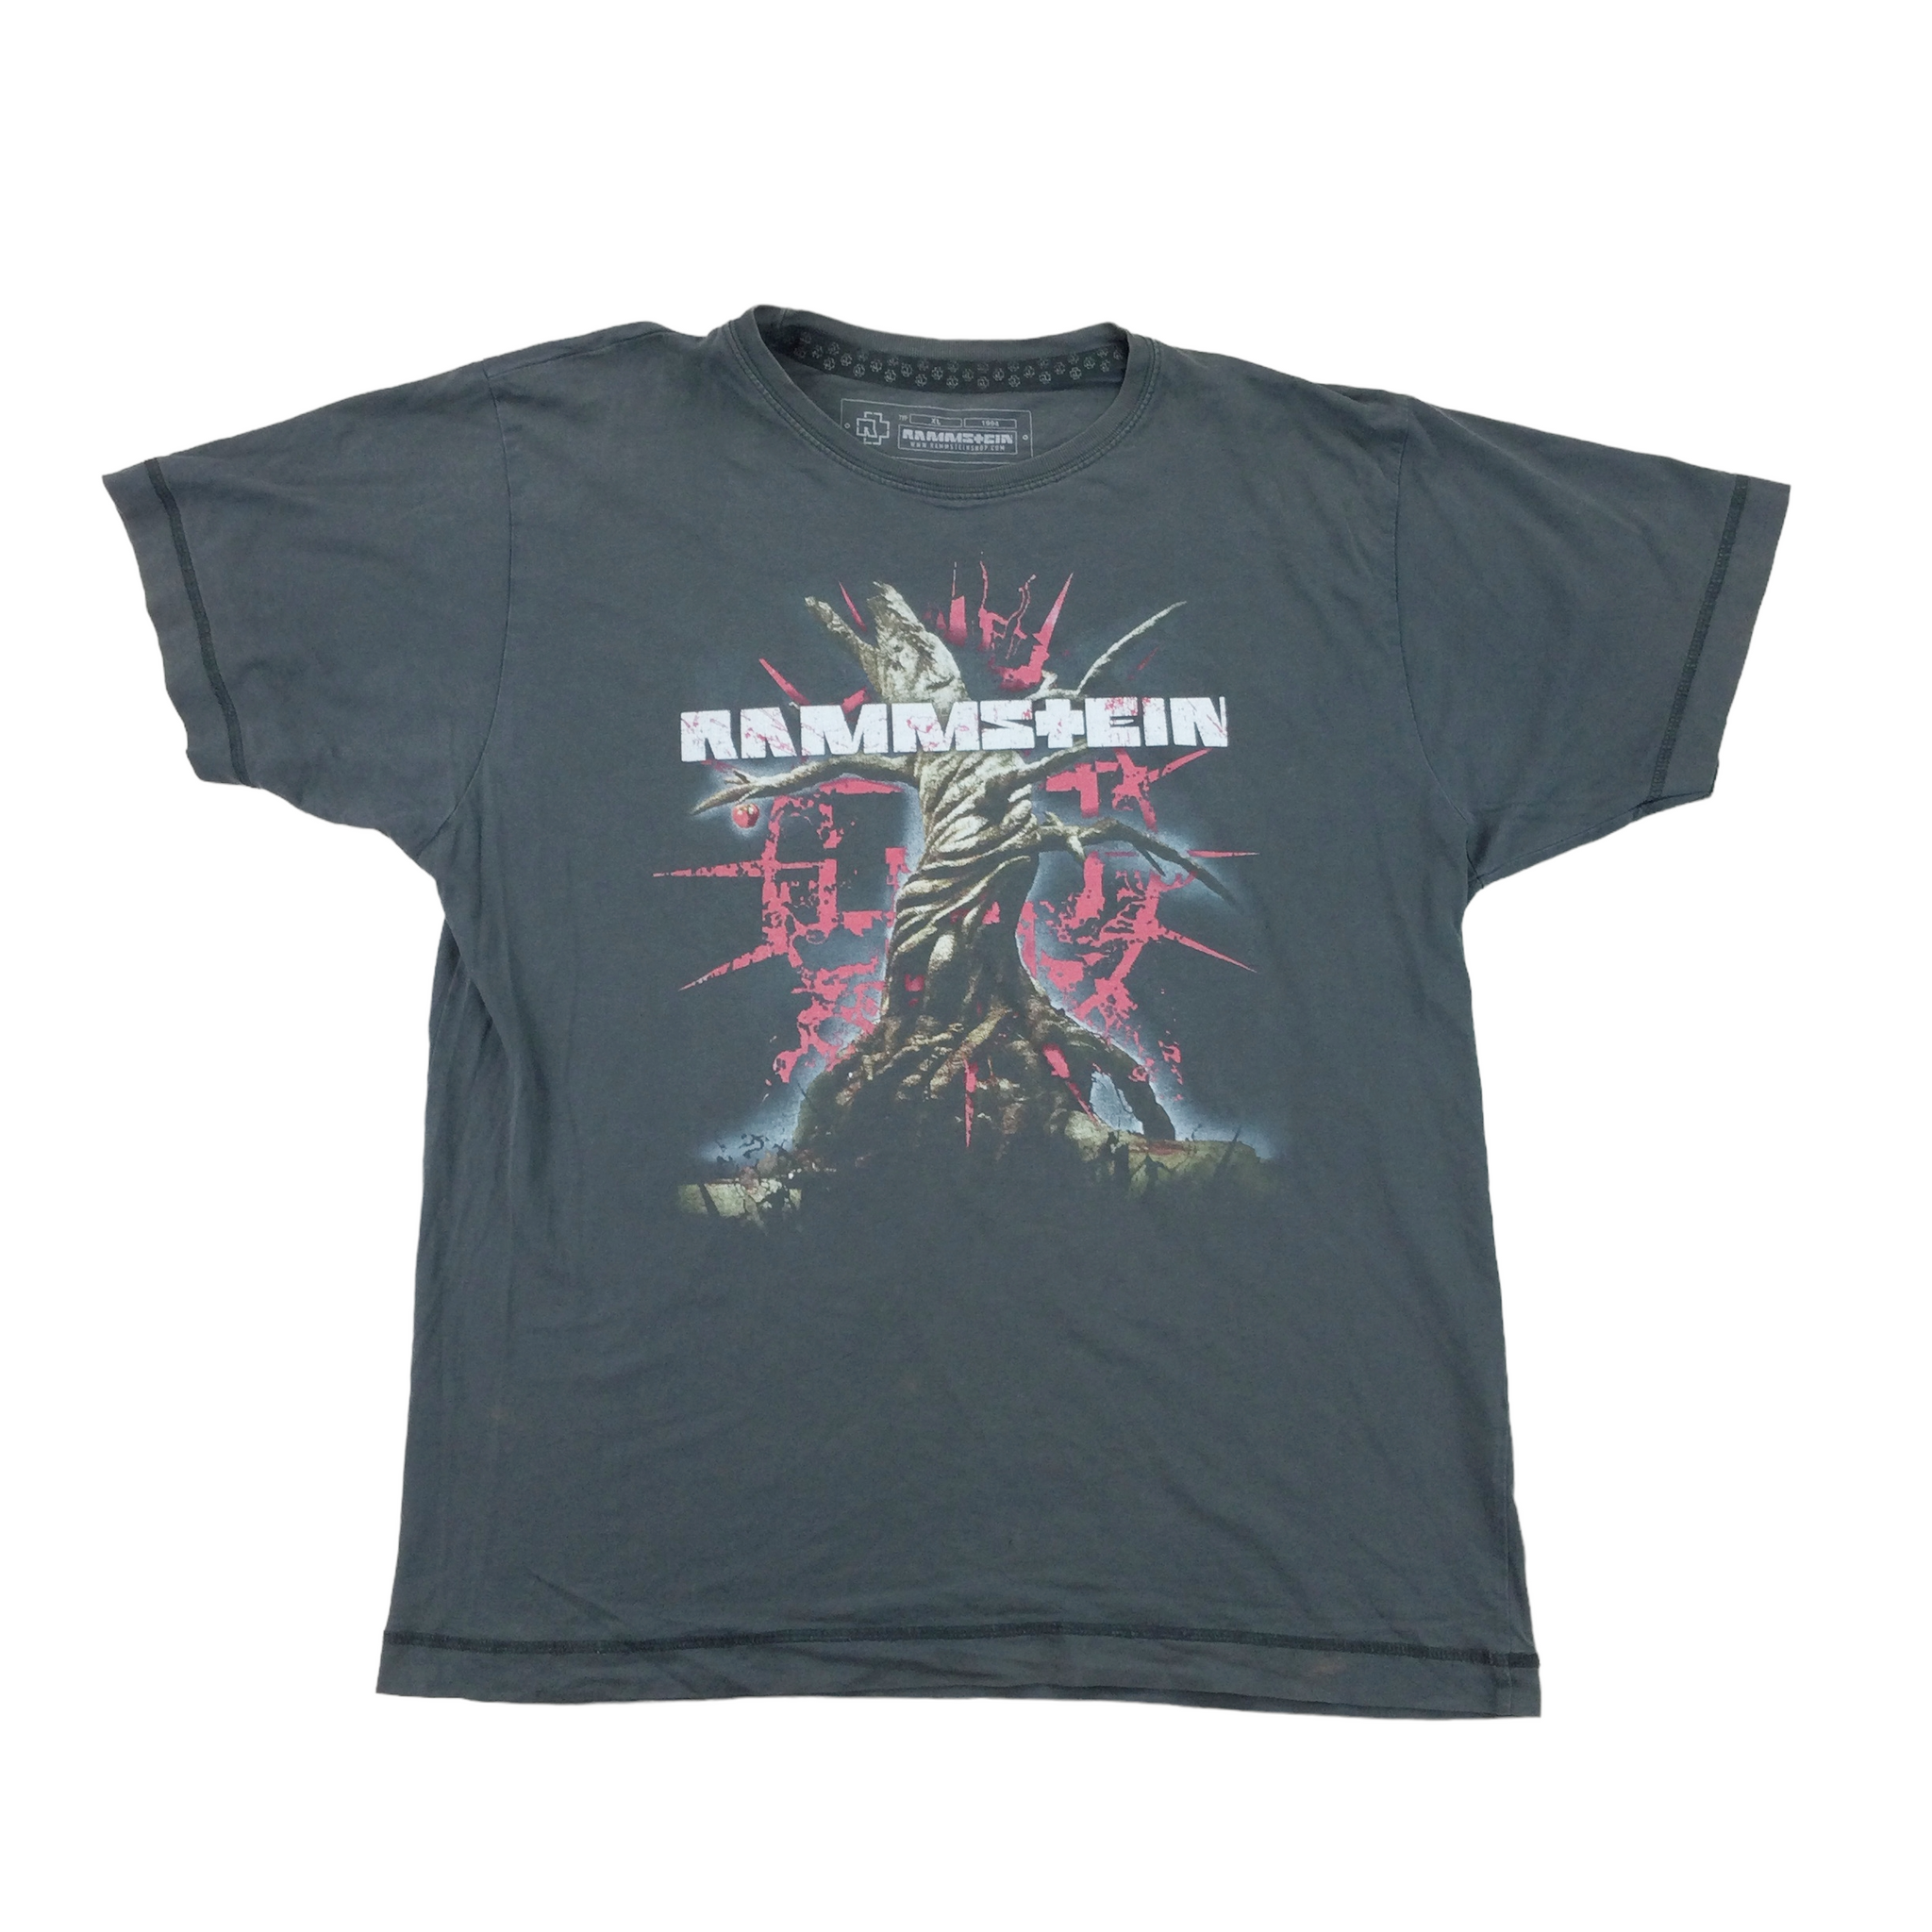 Rammstein 'Hier kommt die Sonne' T-Shirt - XL | OLESSTORE VINTAGE